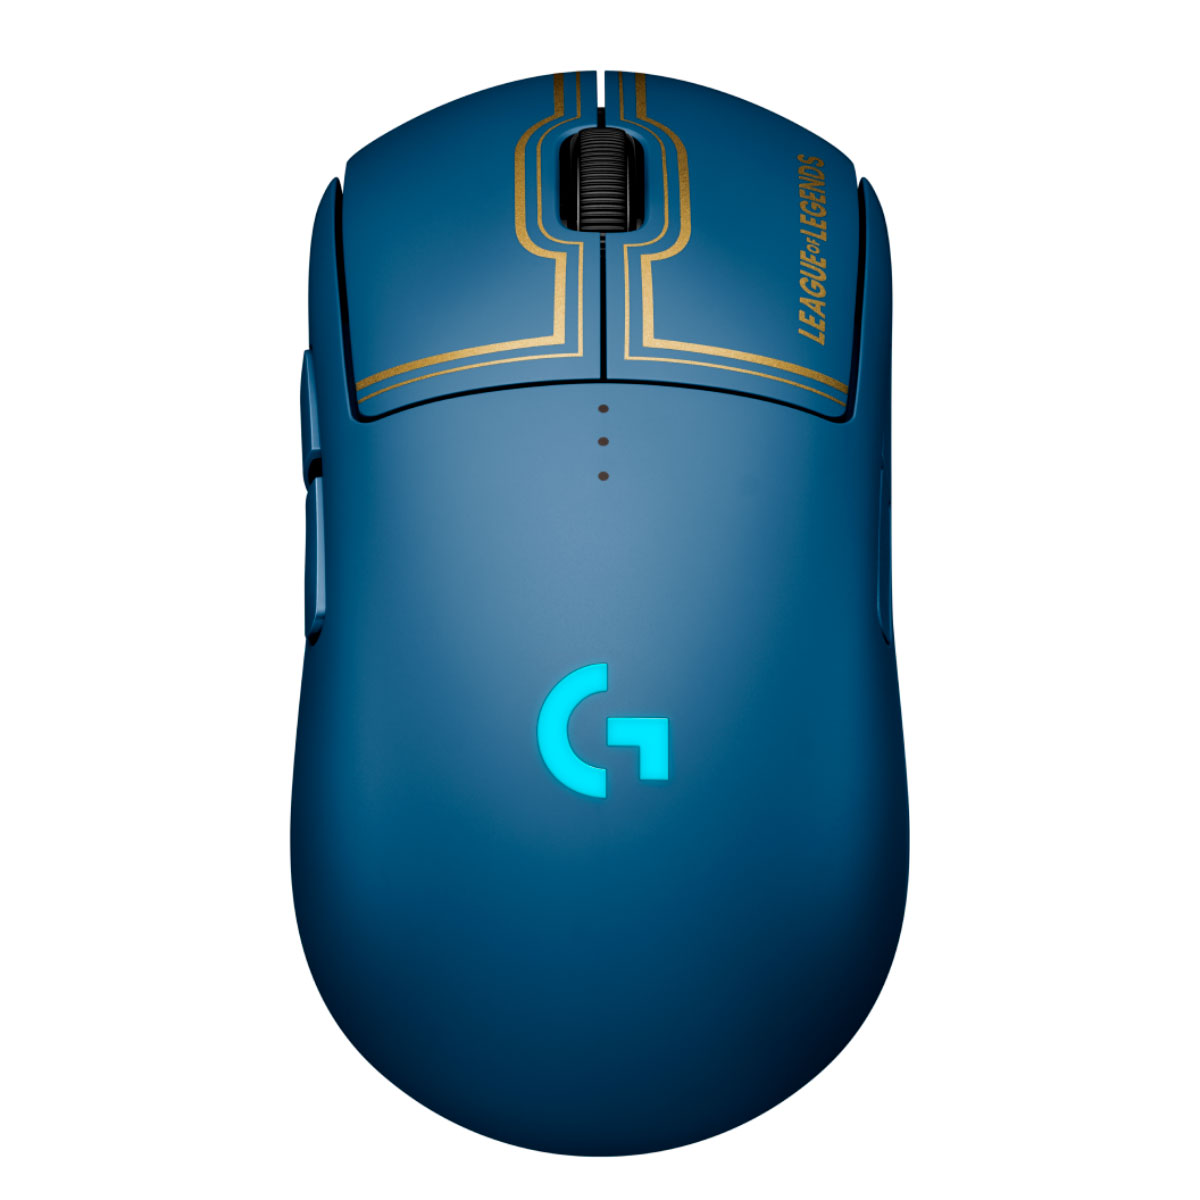 Mouse Gamer Sem Fio Logitech G Pro League of Legends Edition - RGB - 25.600dpi - 8 Botões - Receptor sem fio LightSpeed - 1ms - 910-006450